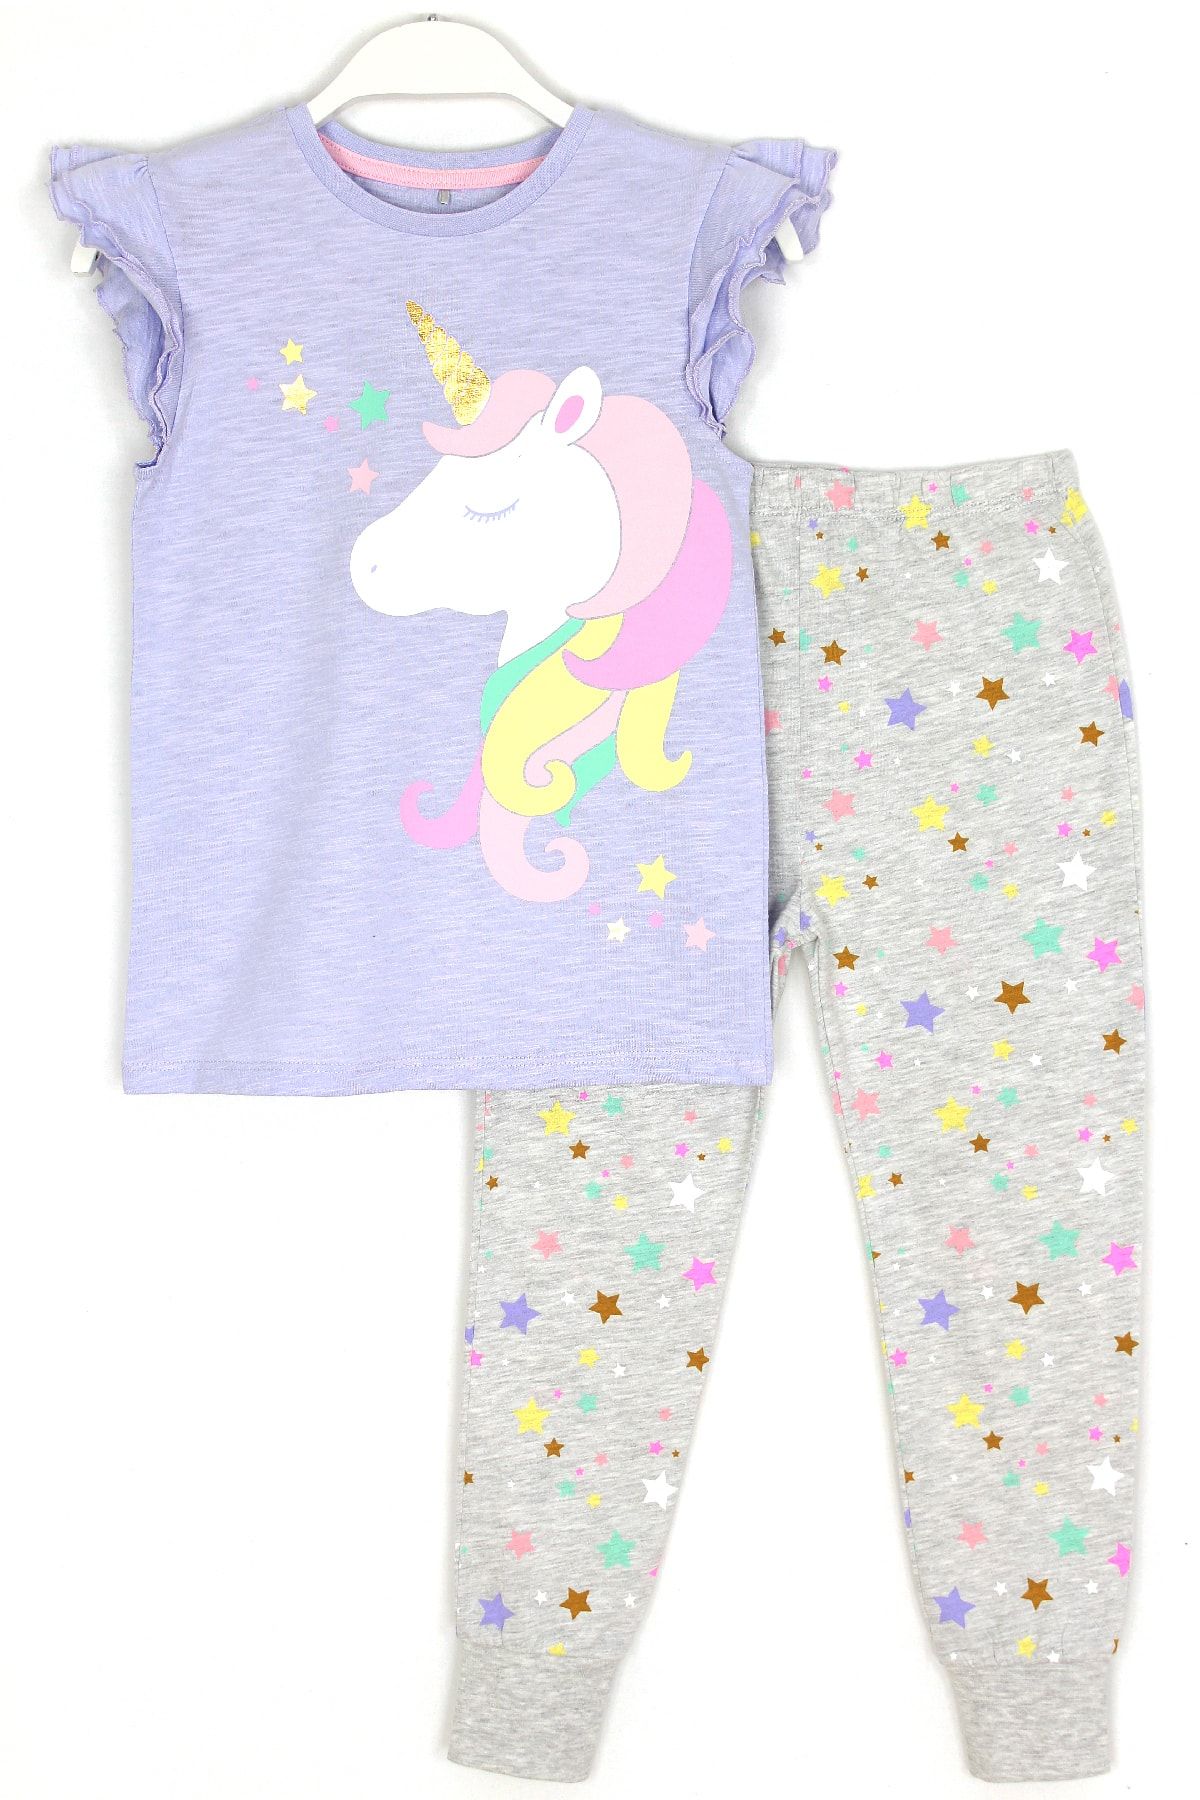 DobaKids Kız Çocuk Unicorn Desenli Yazlık Pijama Takımı